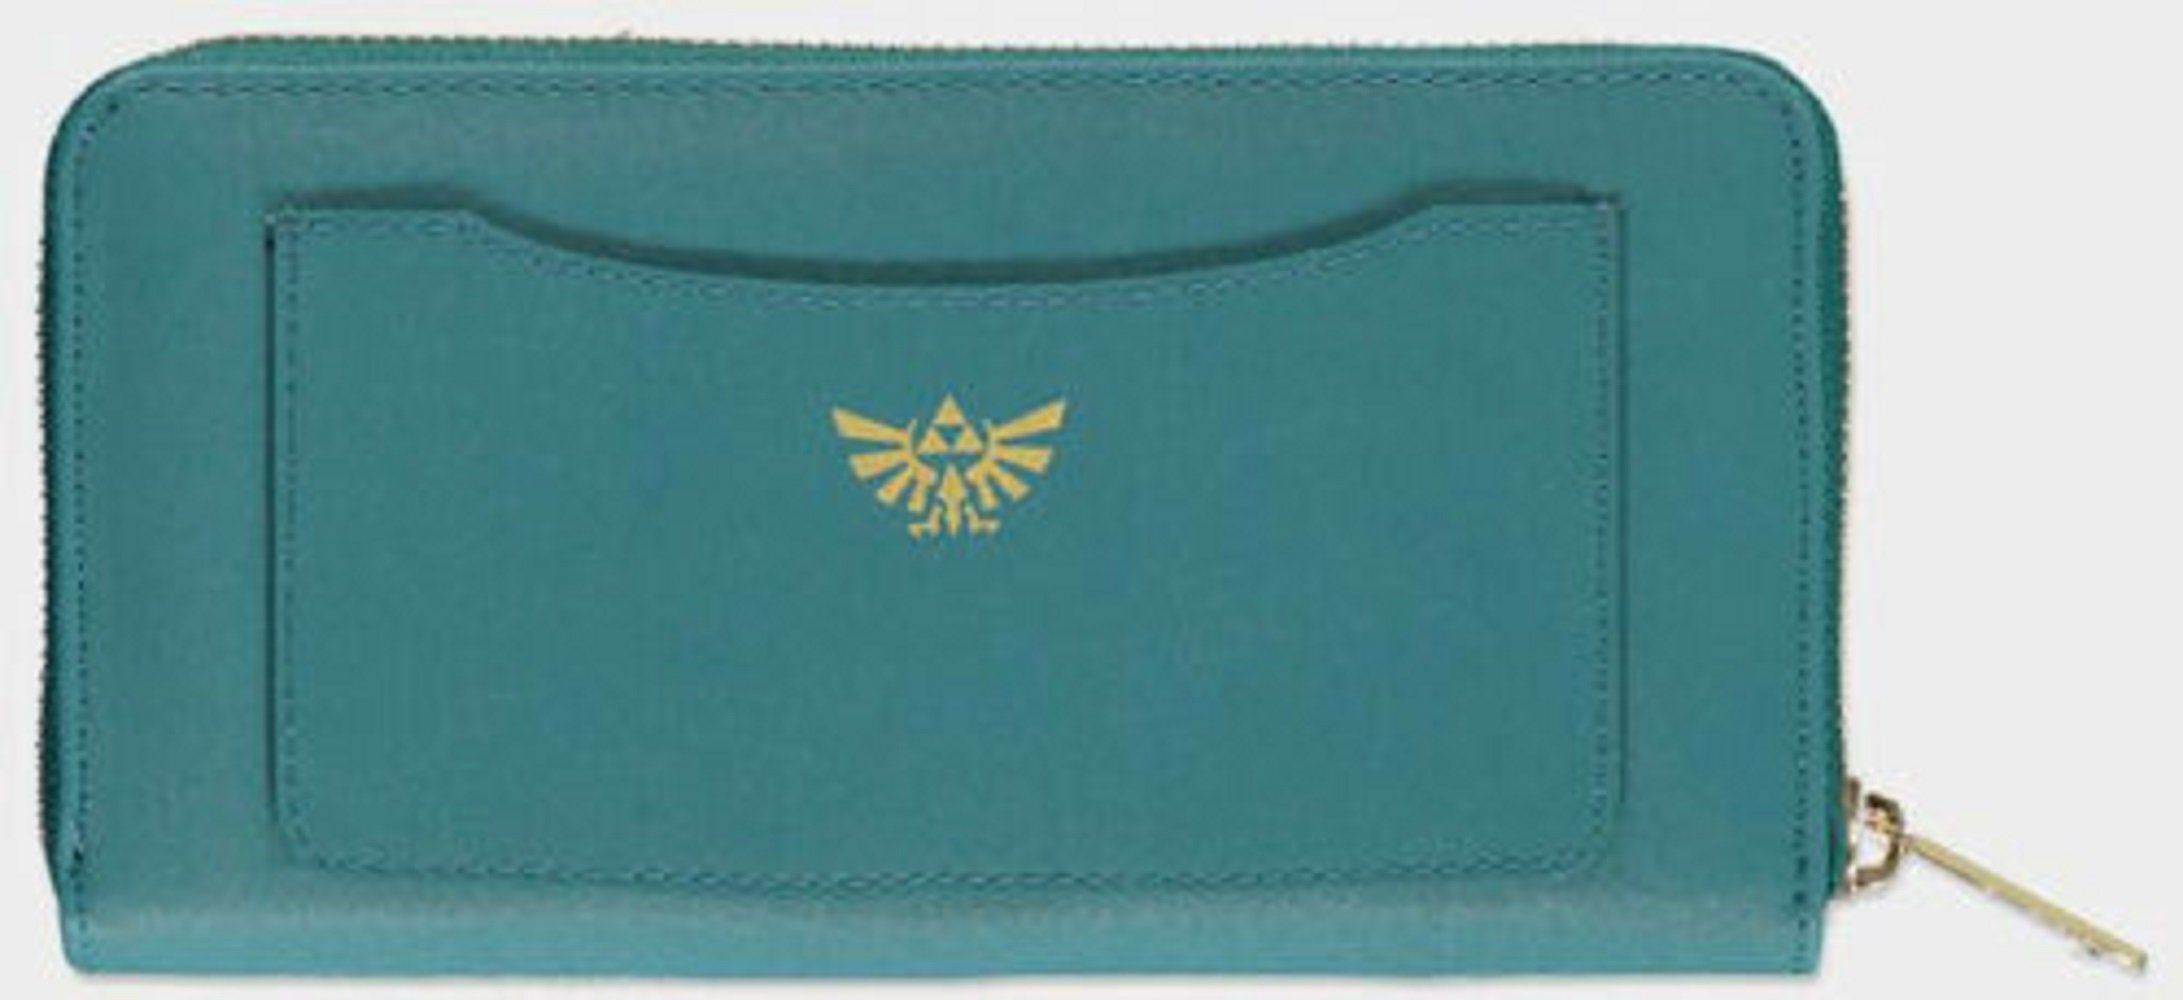 DIFUZED Geldbörse Zelda Zip Around Ladies Wallet in Green Neu Top